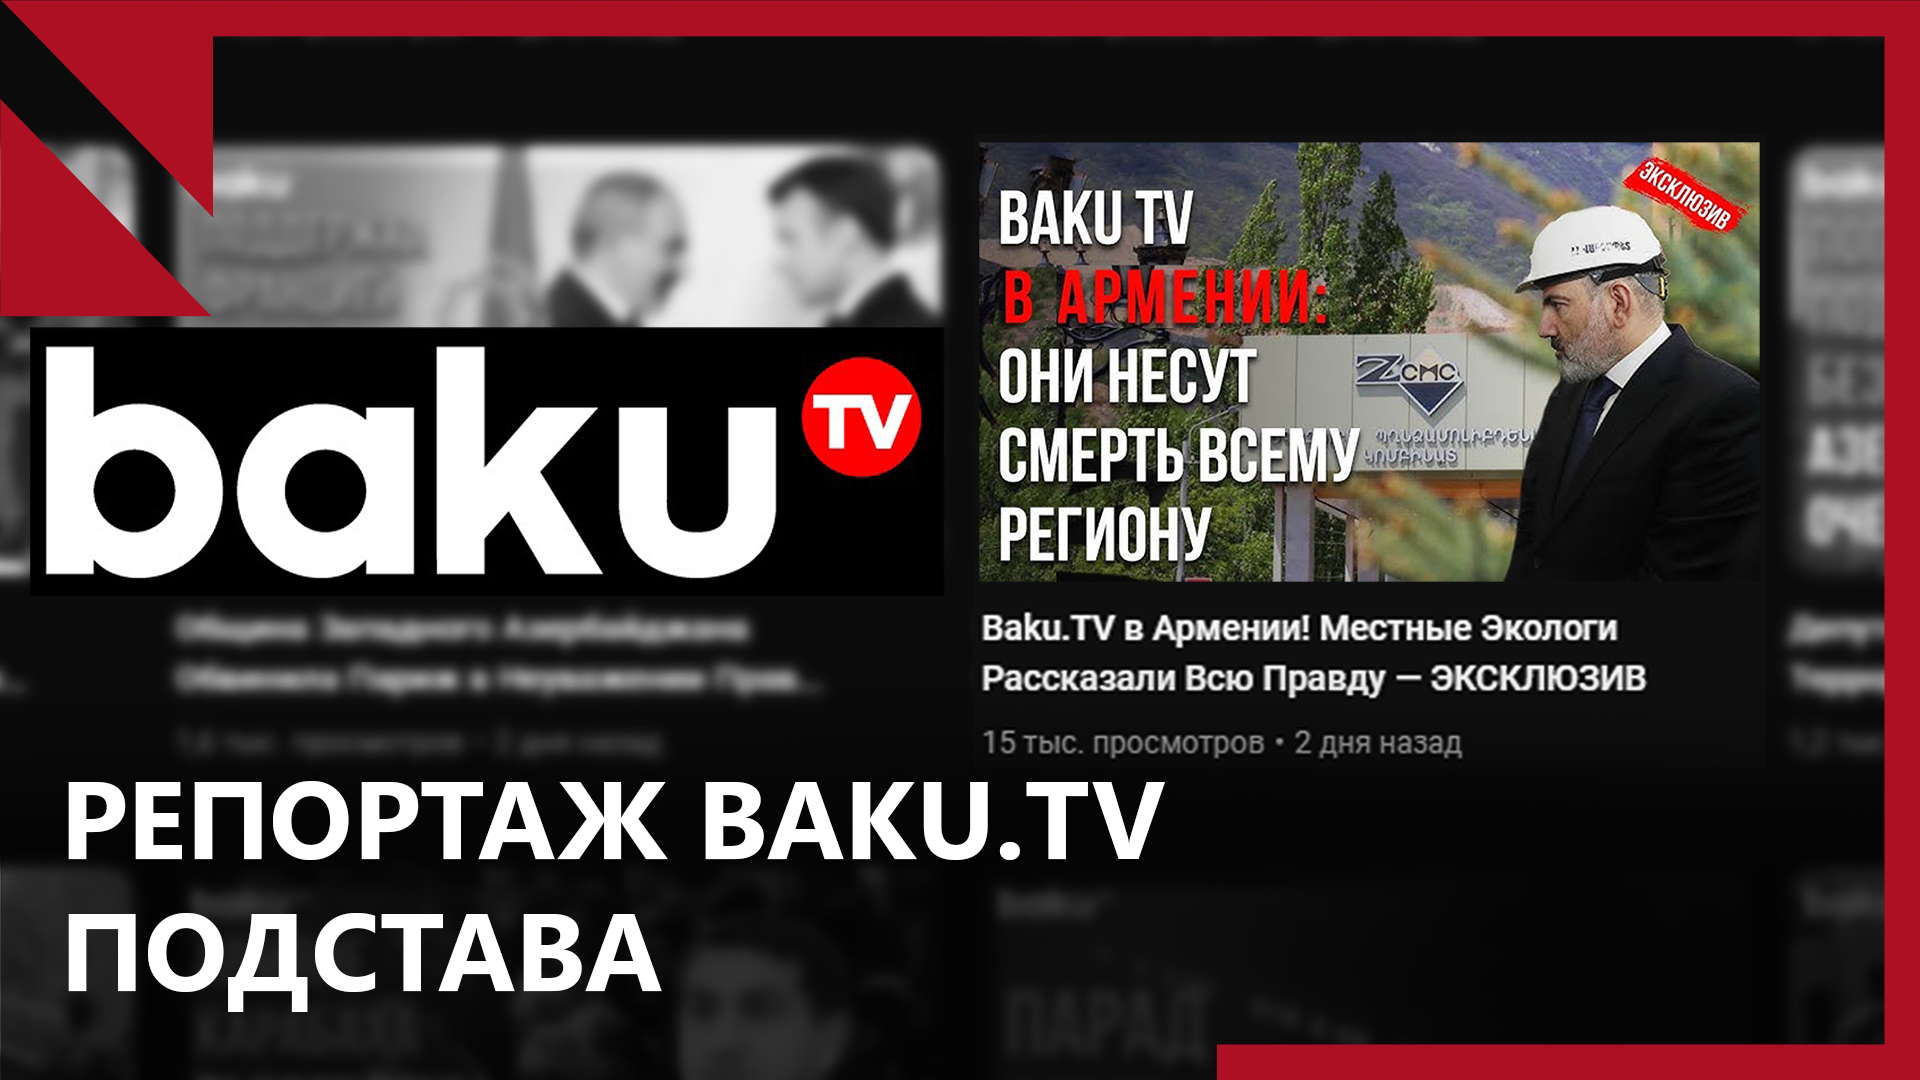 Репортаж Baku.TV “из Армении”։ подставные журналисты и собеседники, ставшие жертвой обмана